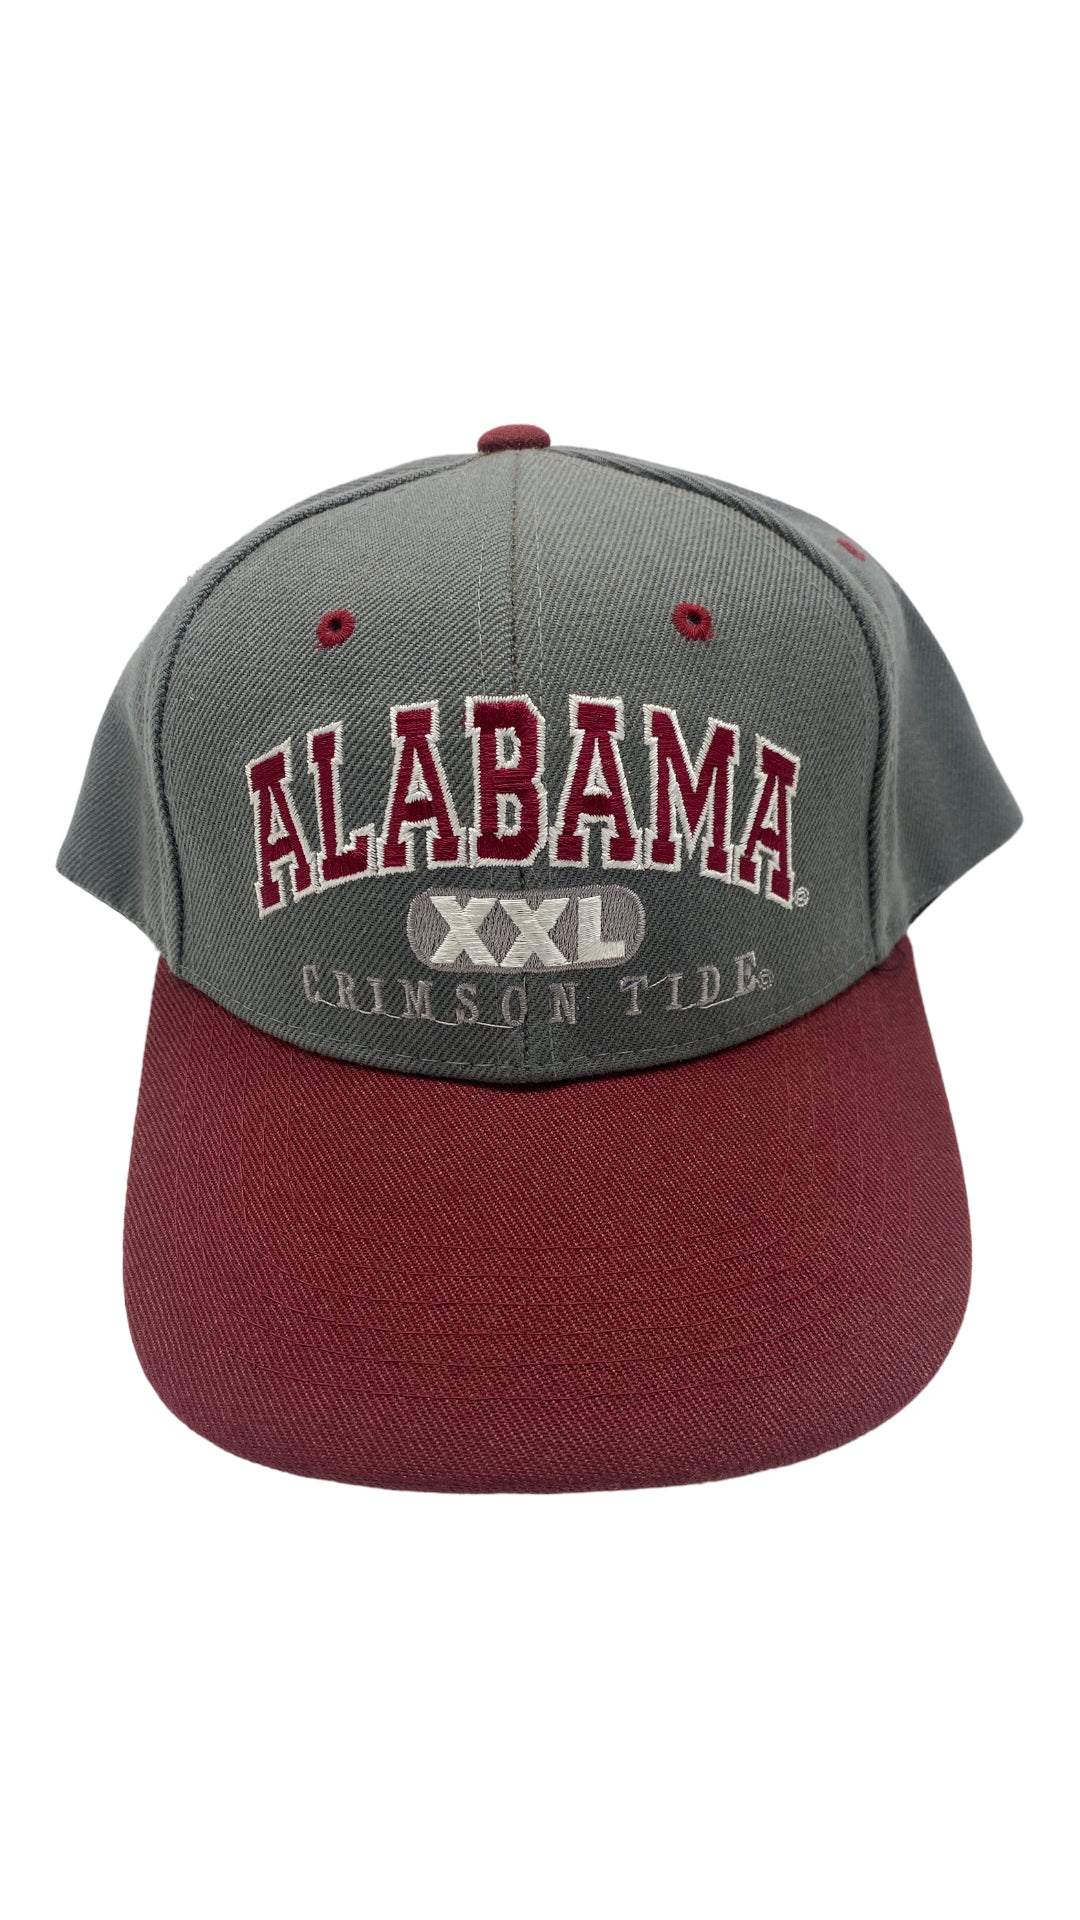 VTG Alabama Crimson Tide Snapback Hat